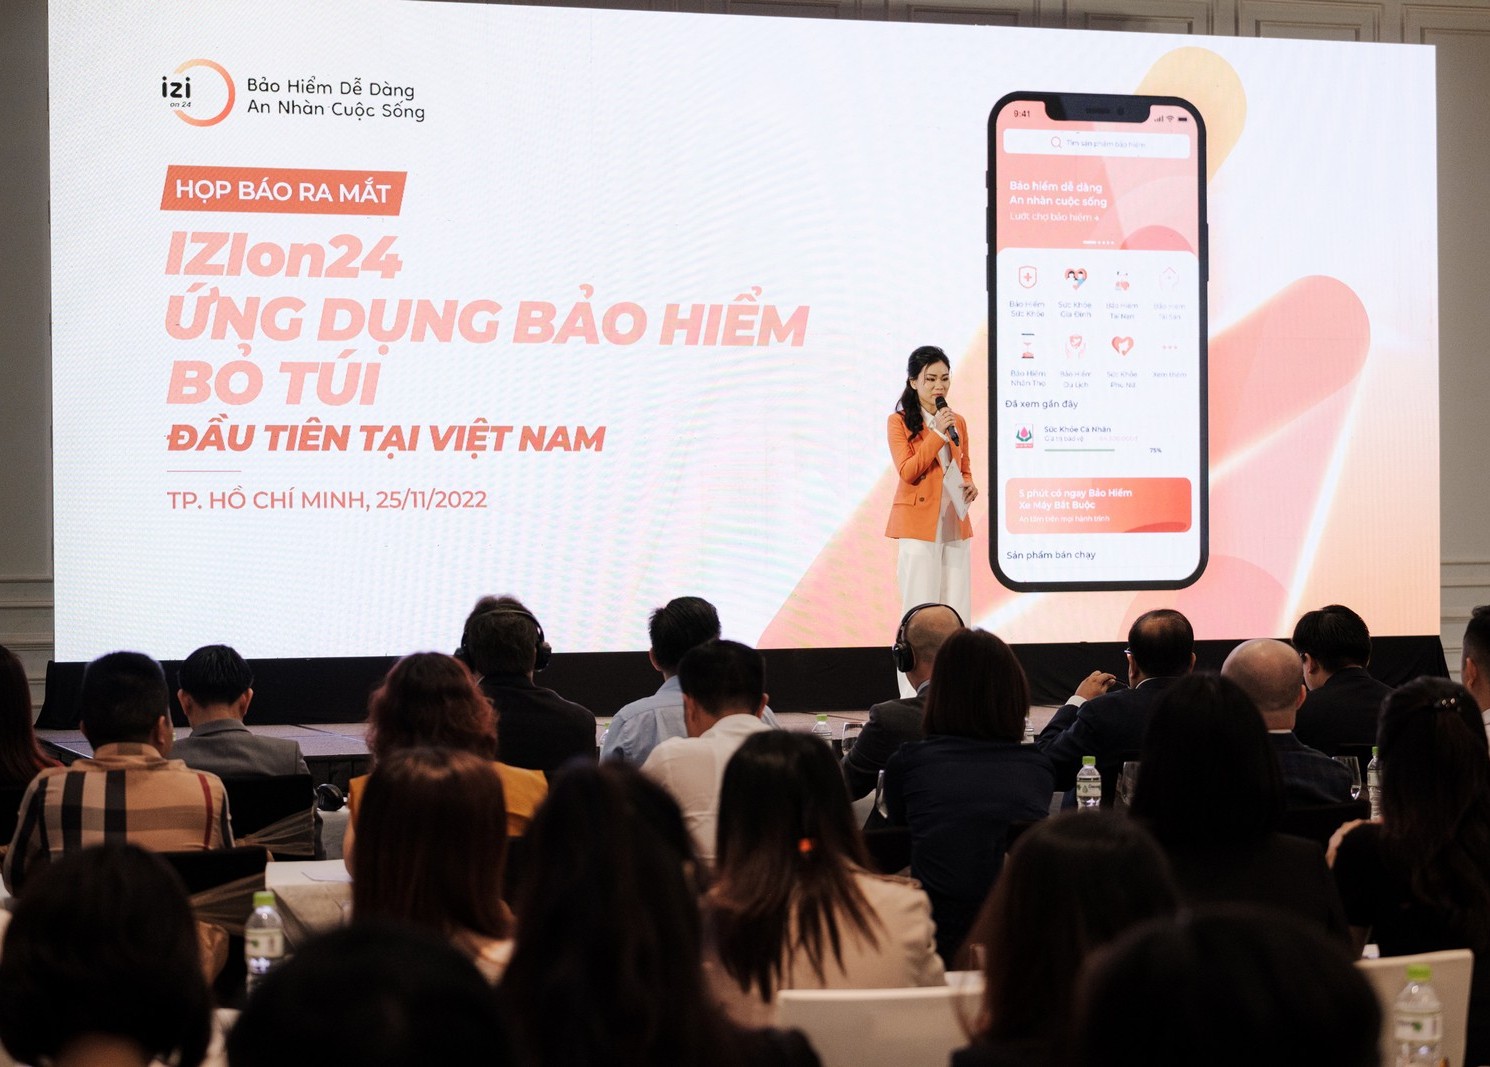 Ideal Life ra mắt ứng dụng bảo hiểm bỏ túi đầu tiên tại Việt Nam